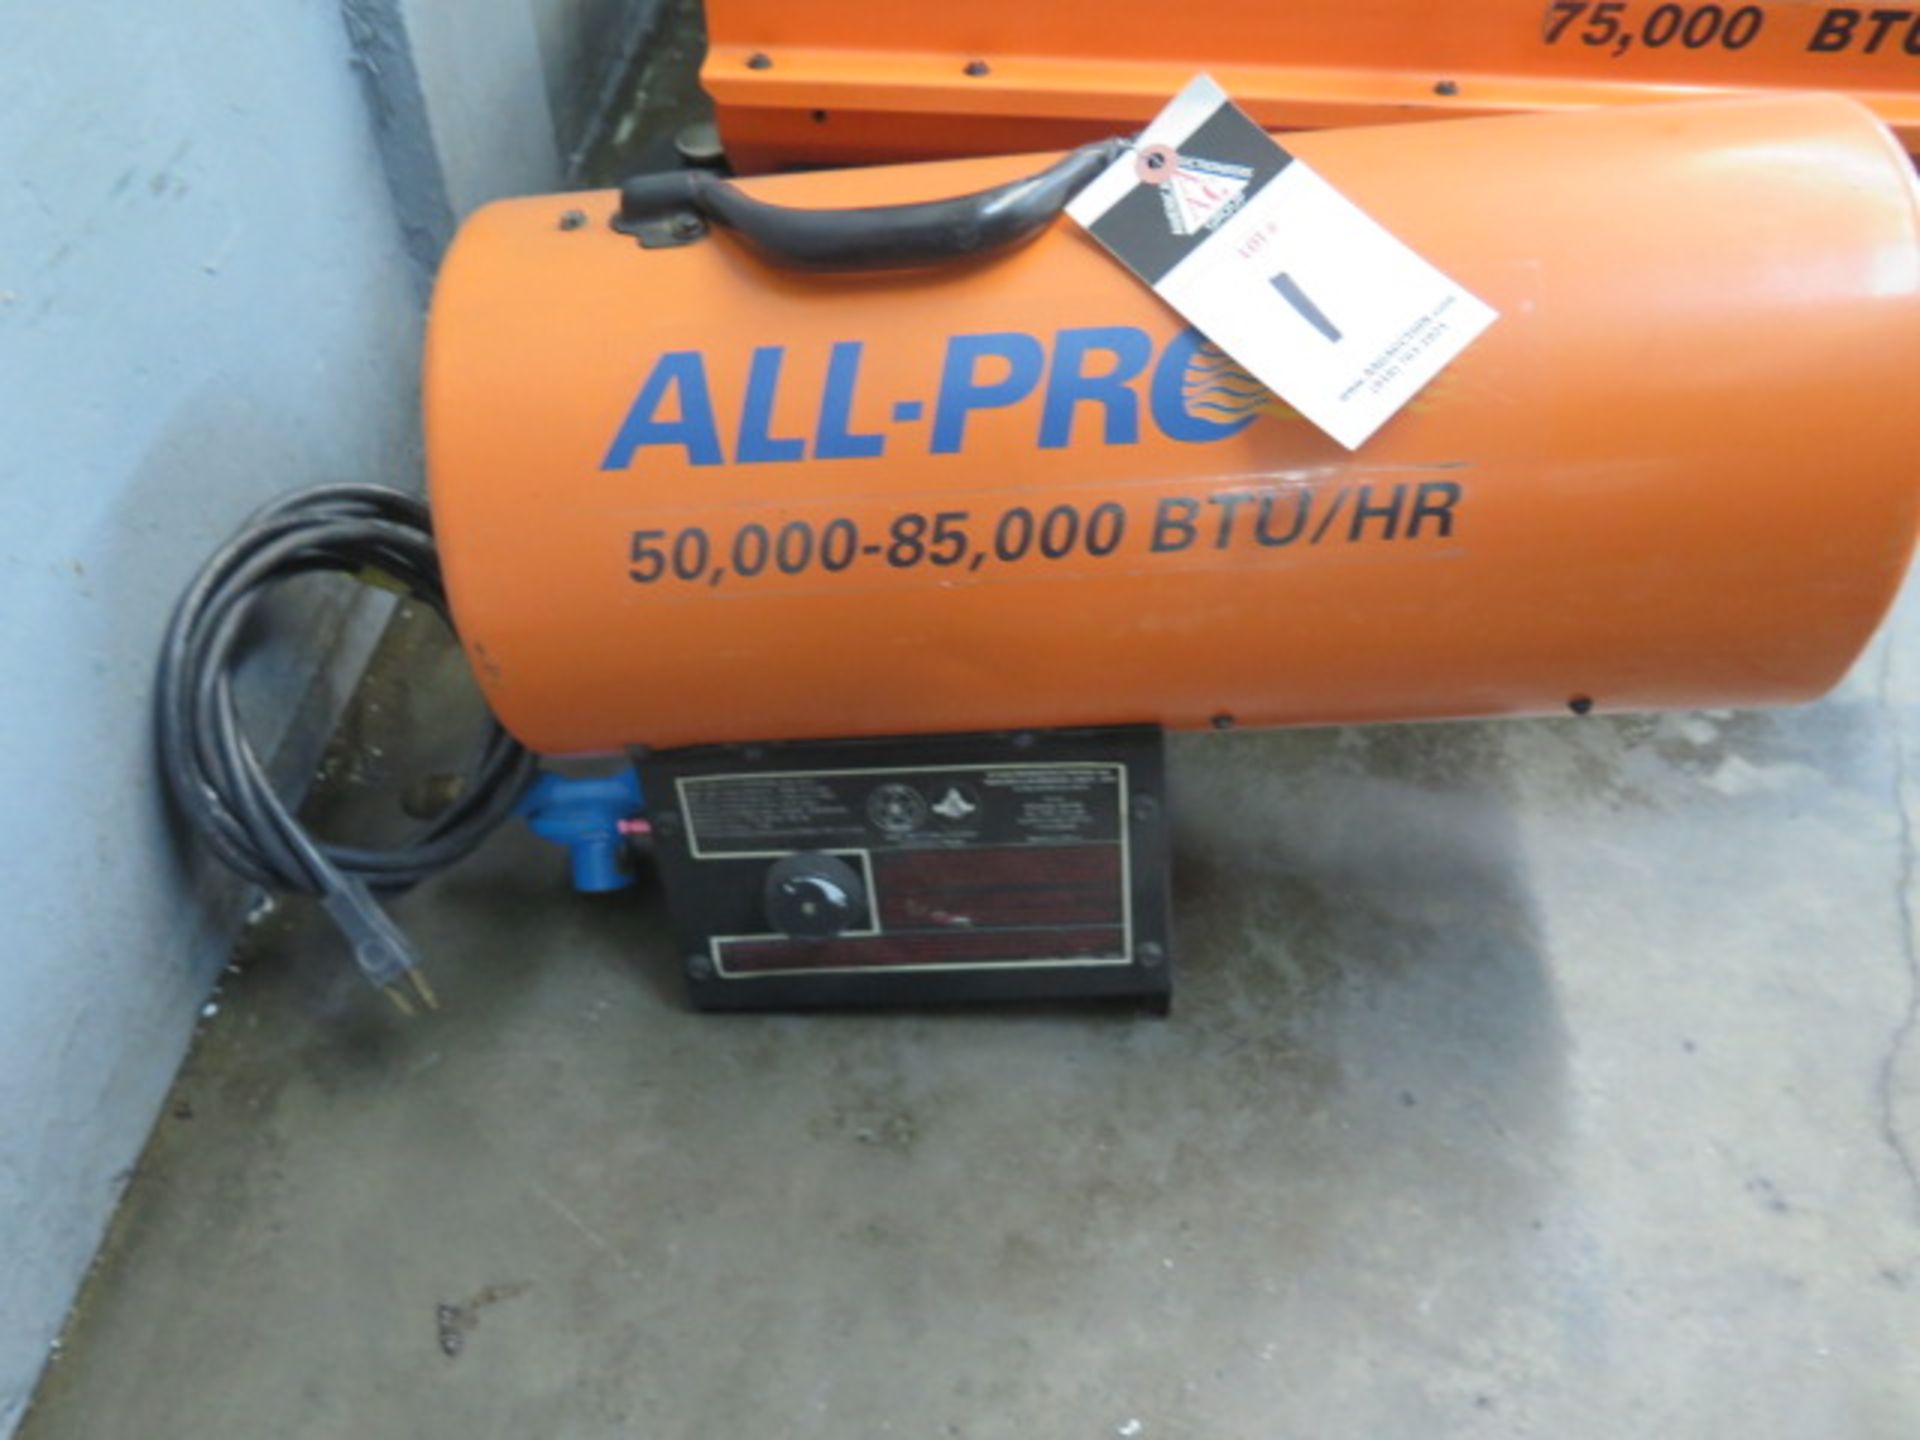 All-Pro 50,000-85,000 BTU Propane Fired Heater